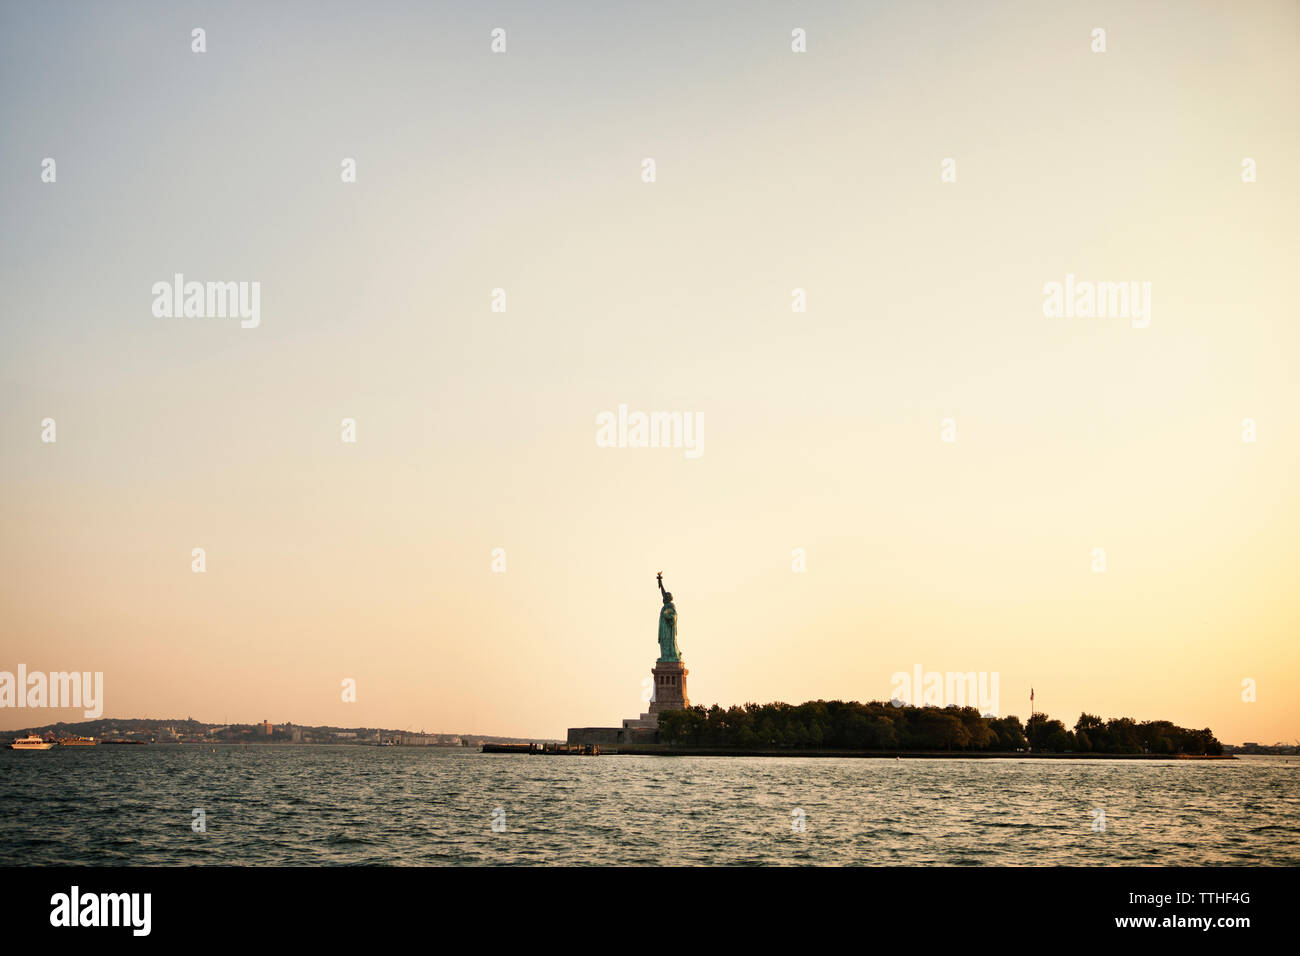 Vue sur la rivière et de la Statue de la liberté dans la ville contre le ciel au coucher du soleil Banque D'Images